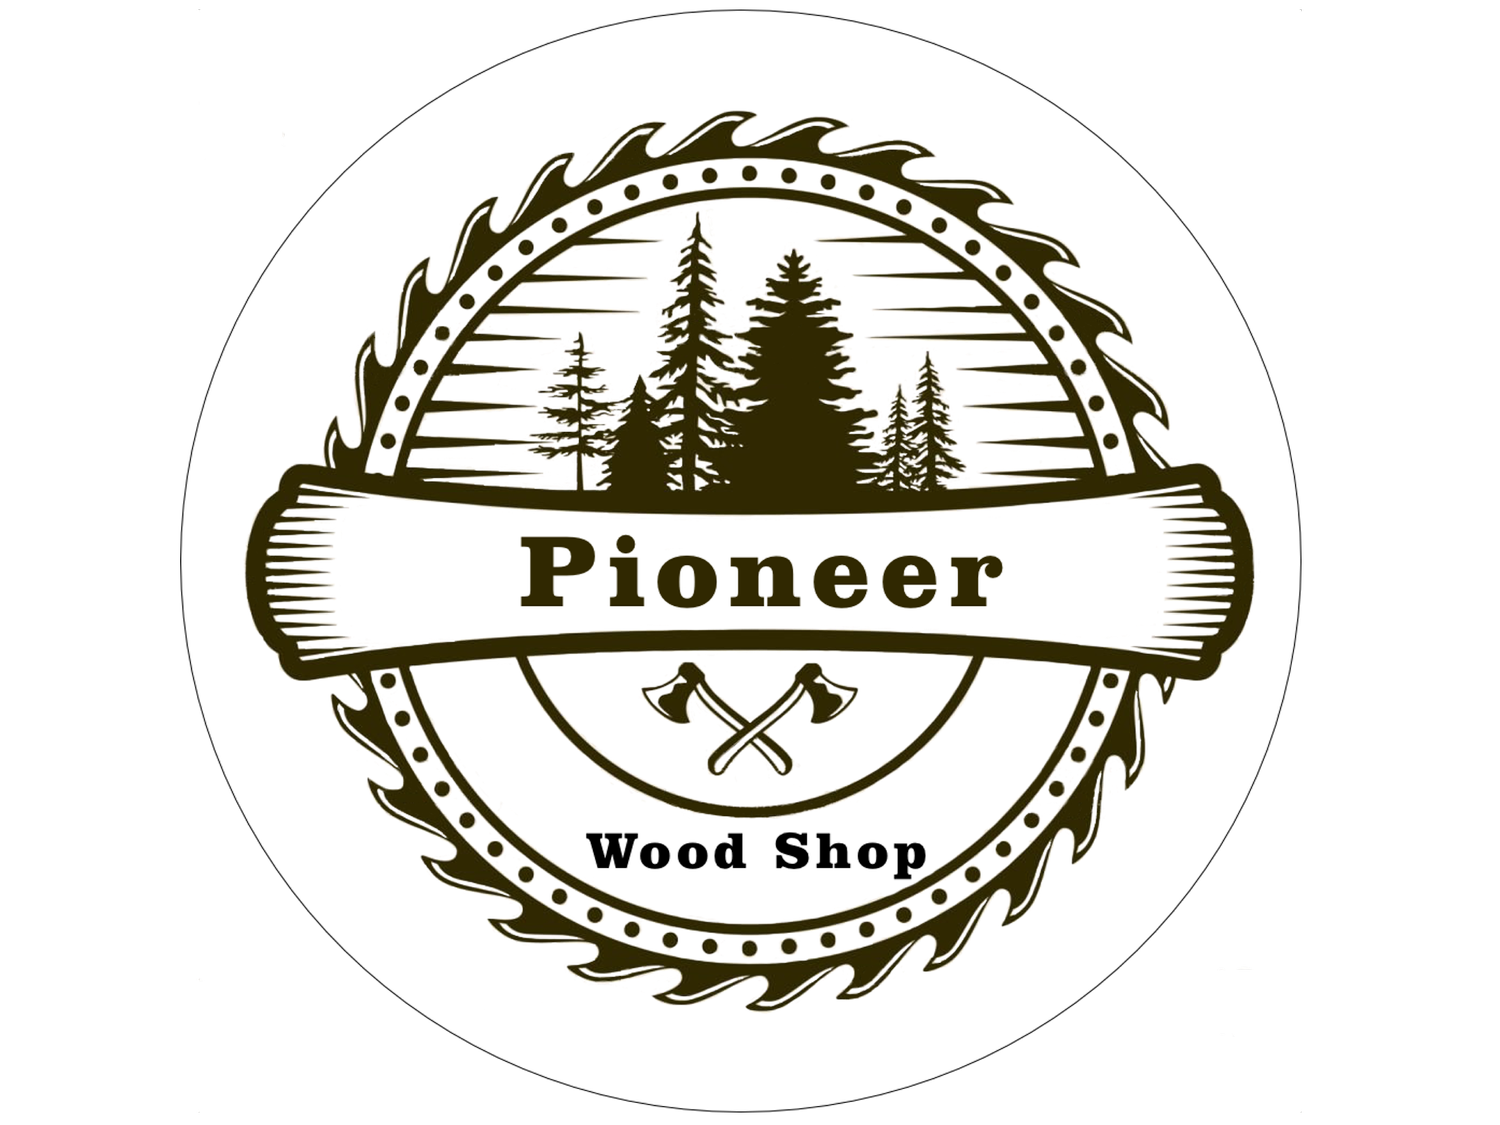 The Pioneer Wood Shop